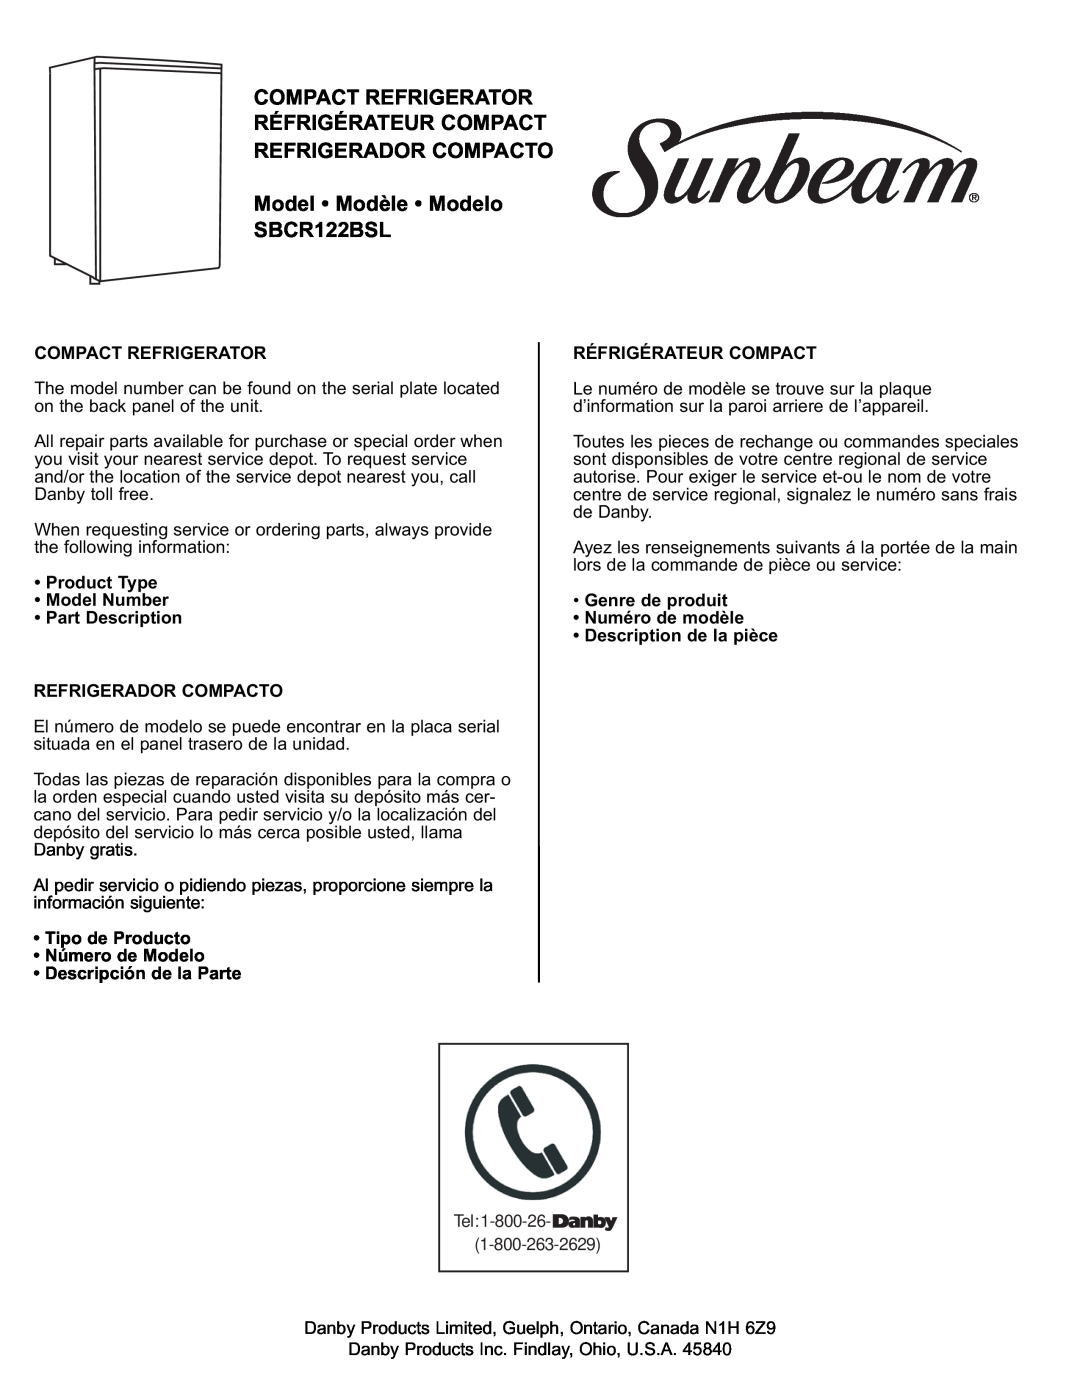 Sunbeam Model Modèle Modelo SBCR122BSL, Product Type Model Number Part Description, Tipo de Producto Número de Modelo 